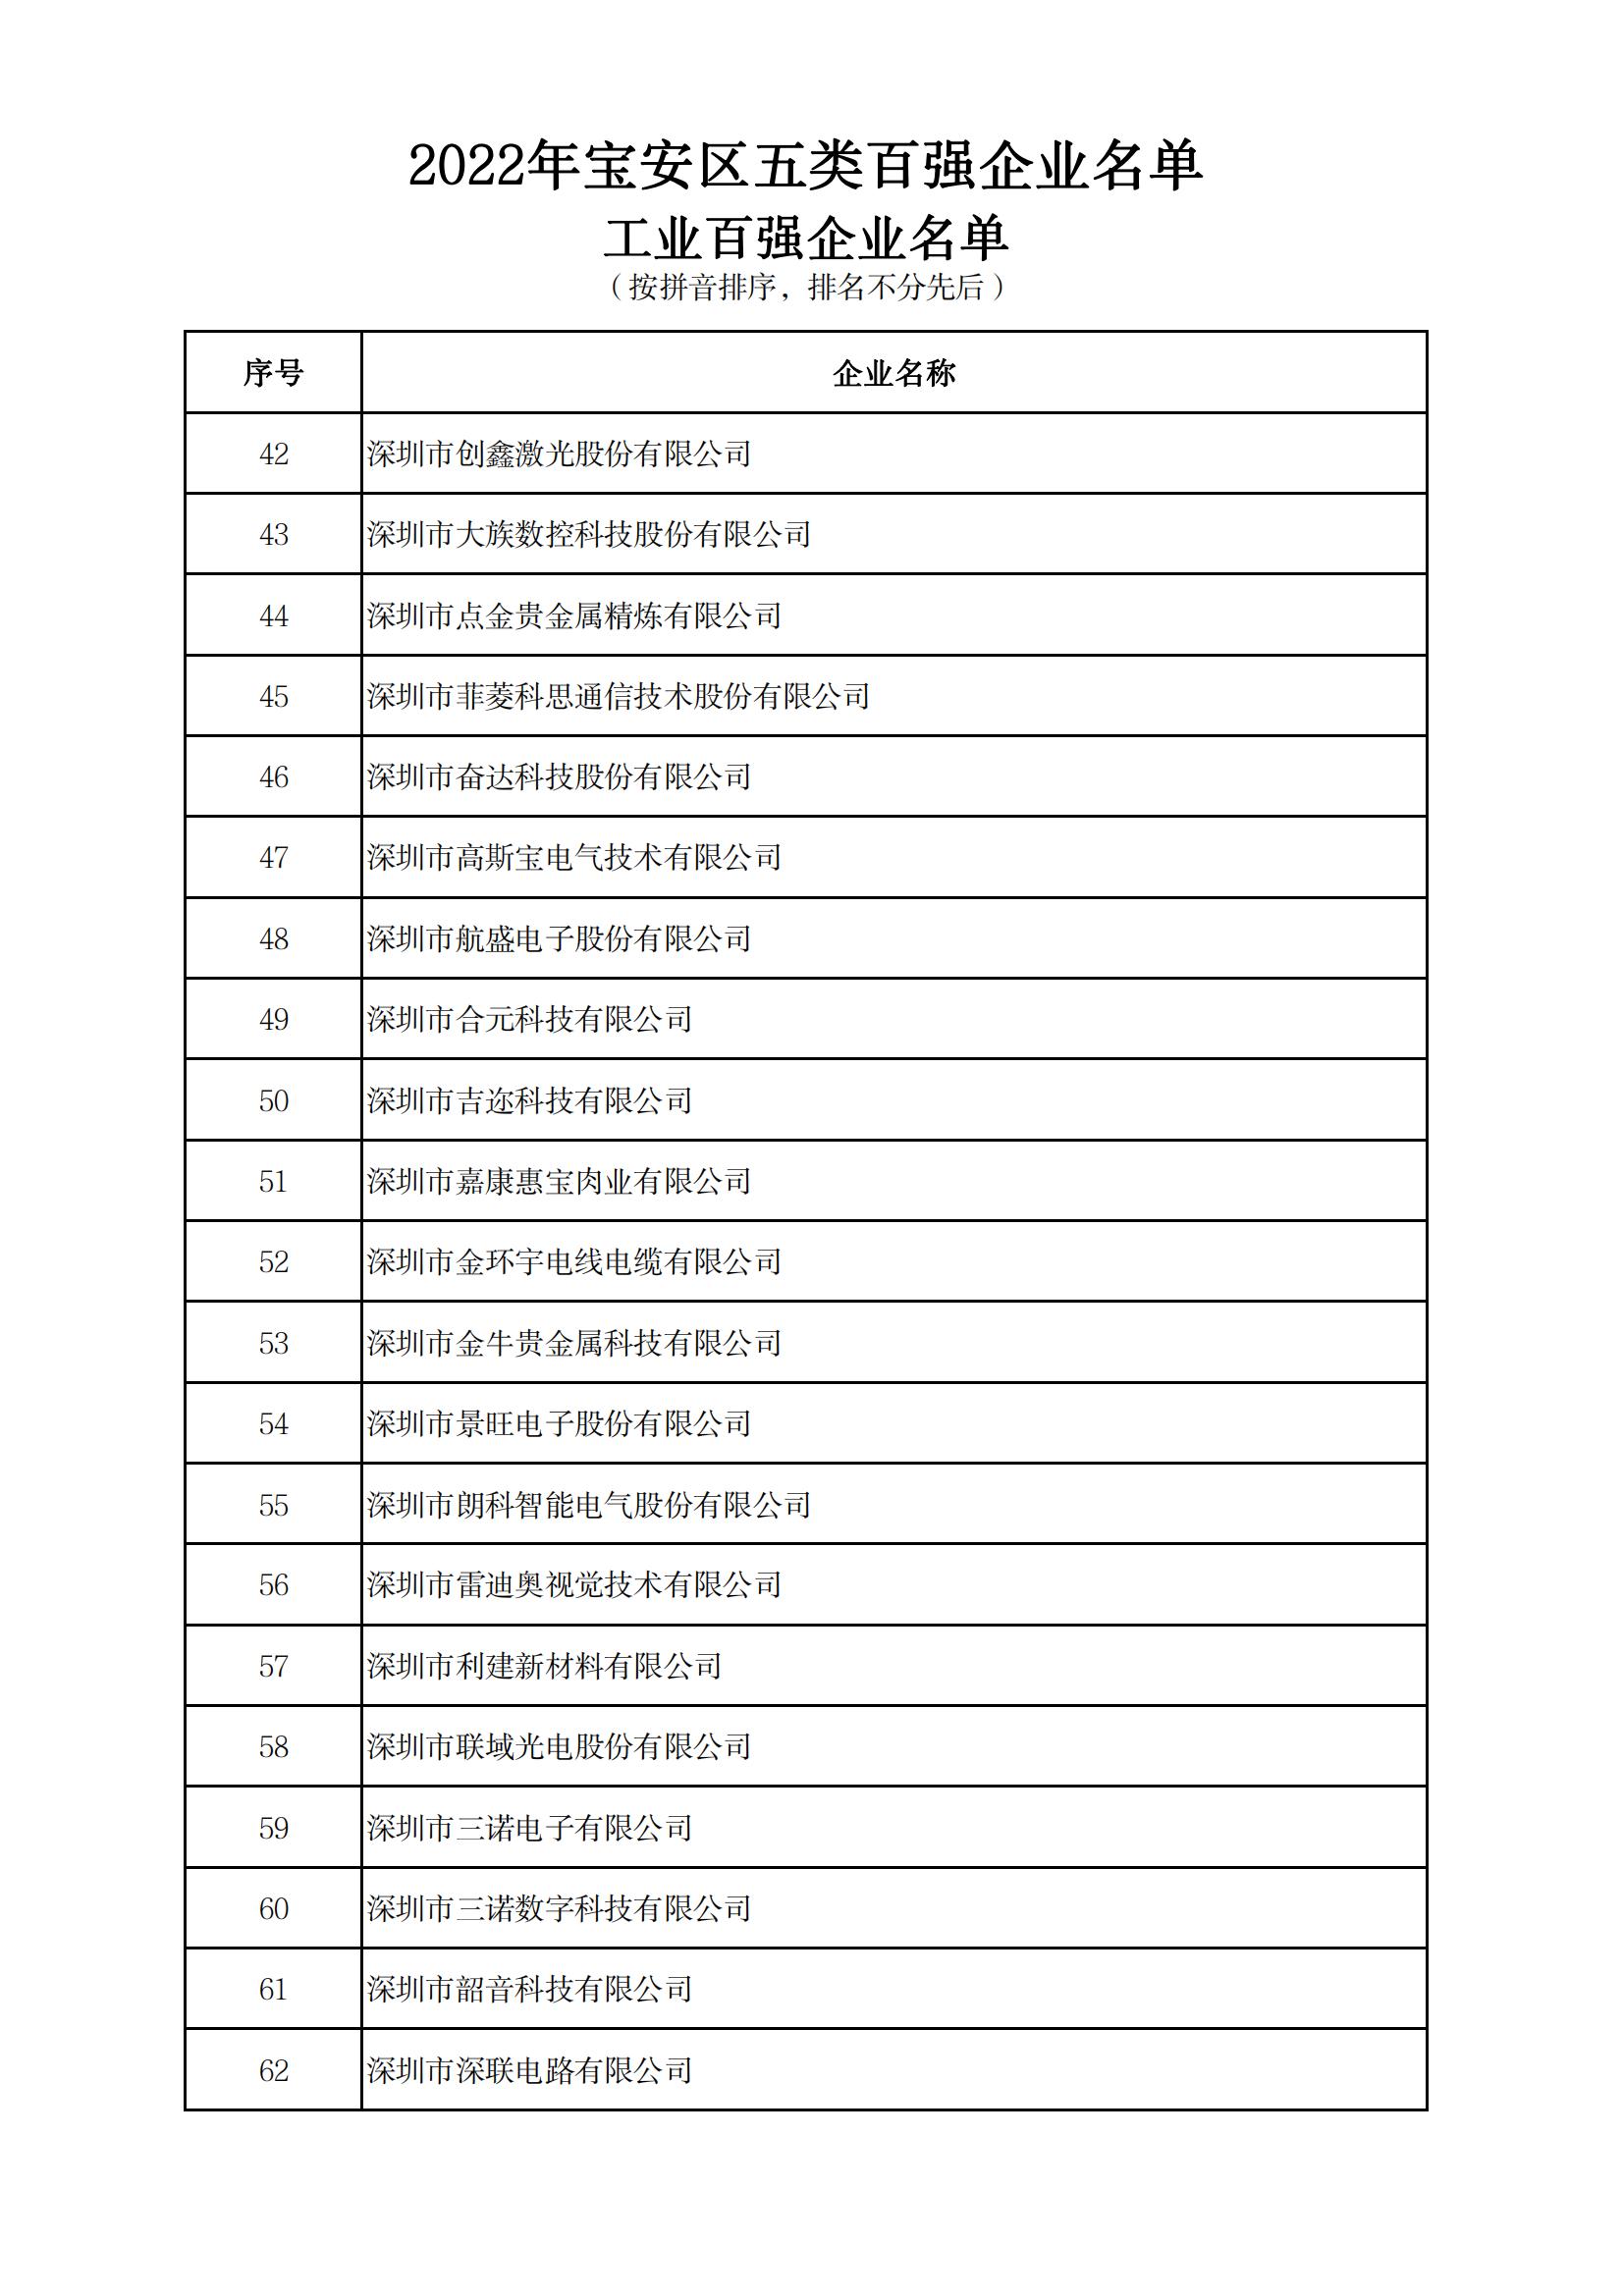 附件：2022年宝安区五类百强企业名单_02.jpg